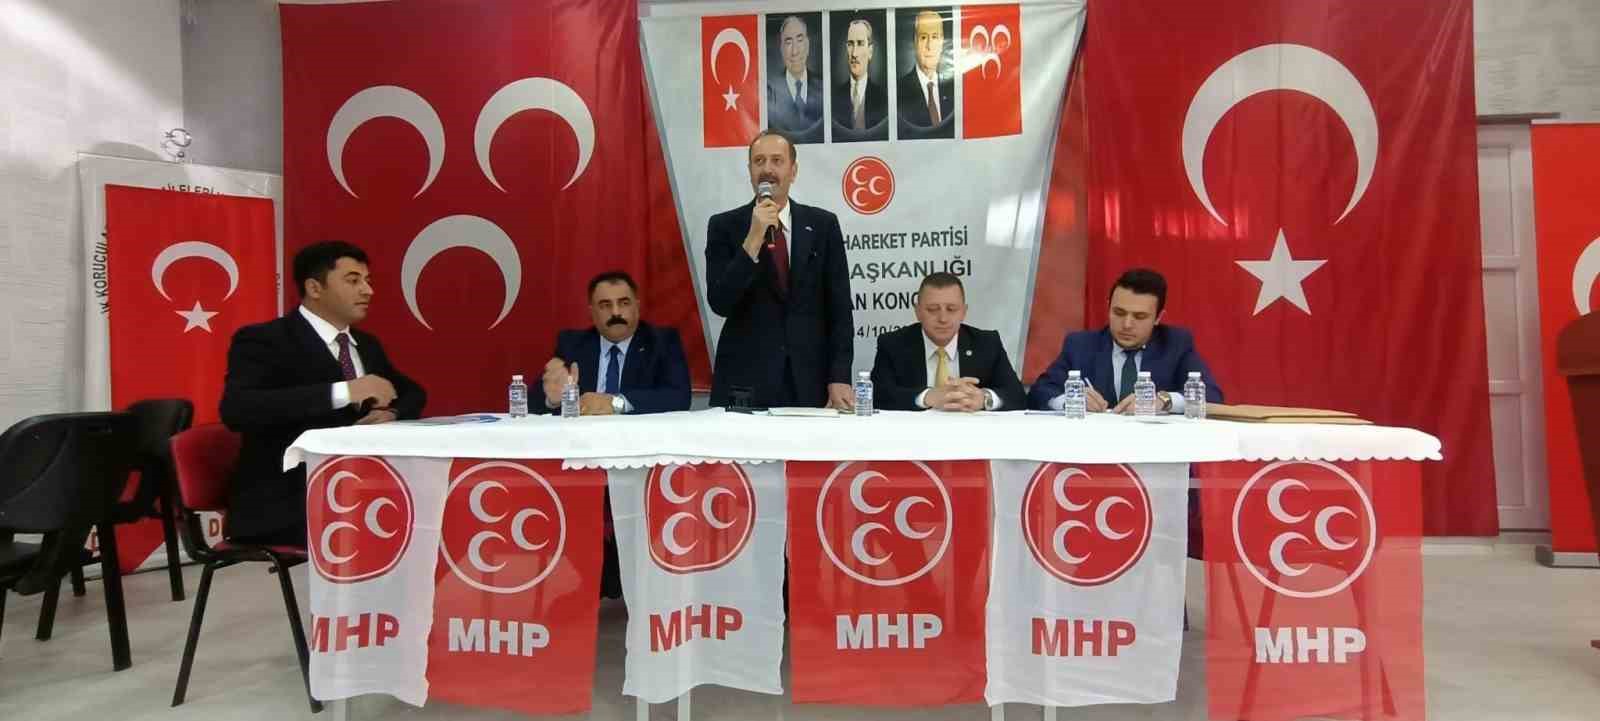 MHP Van İl Başkanı Güngöralp güven tazeledi